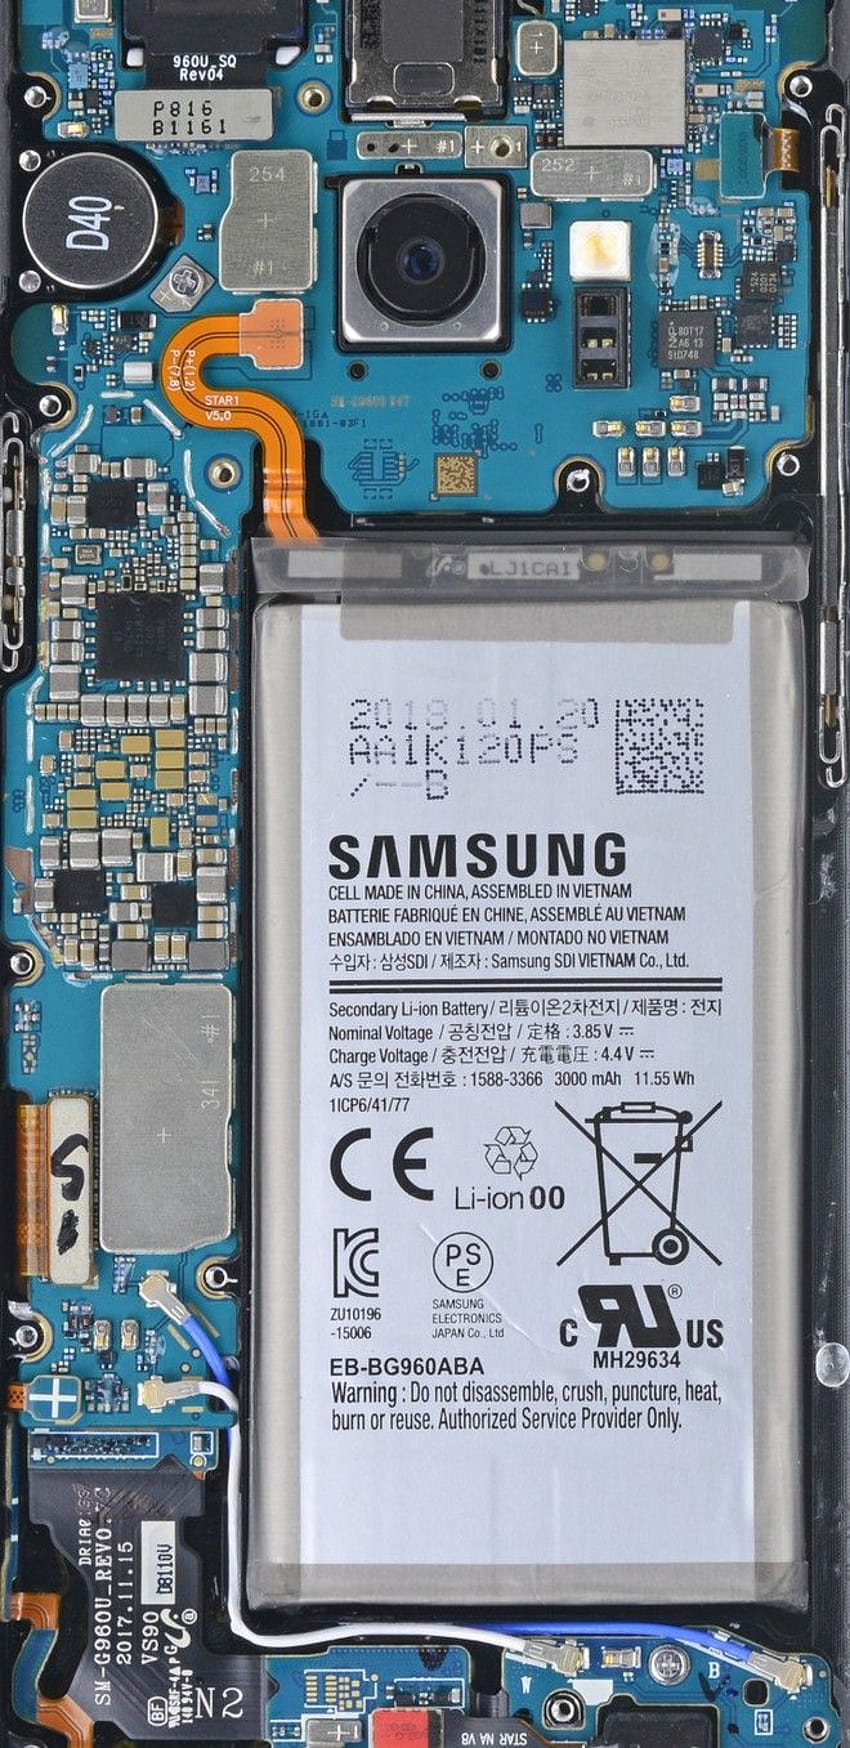 Galaxy S9 : あなたのGalaxy S9を裏返しに見せる、電話回路 HD電話の壁紙